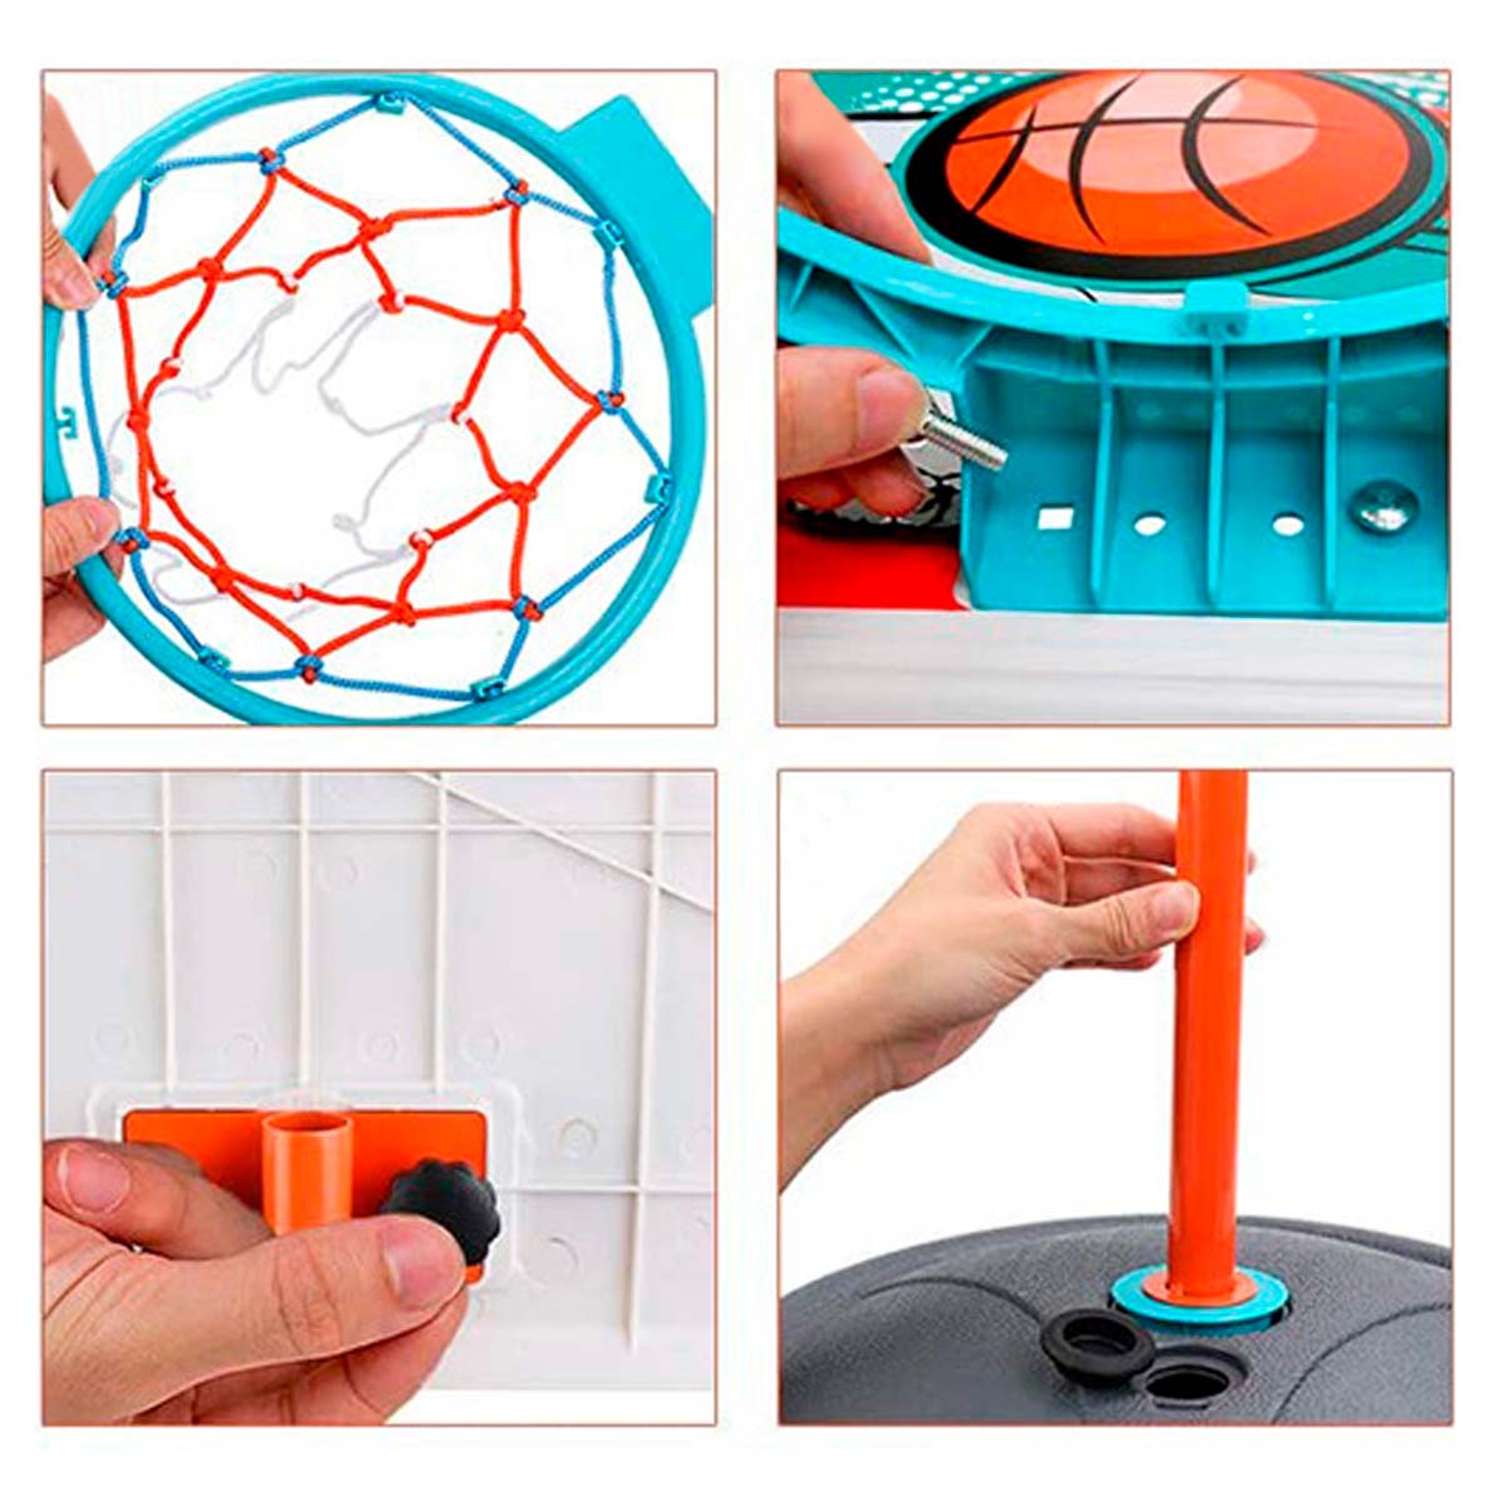 Спортивный игровой набор WiMI детское баскетбольное кольцо с сеткой щитом и стойкой - фото 2